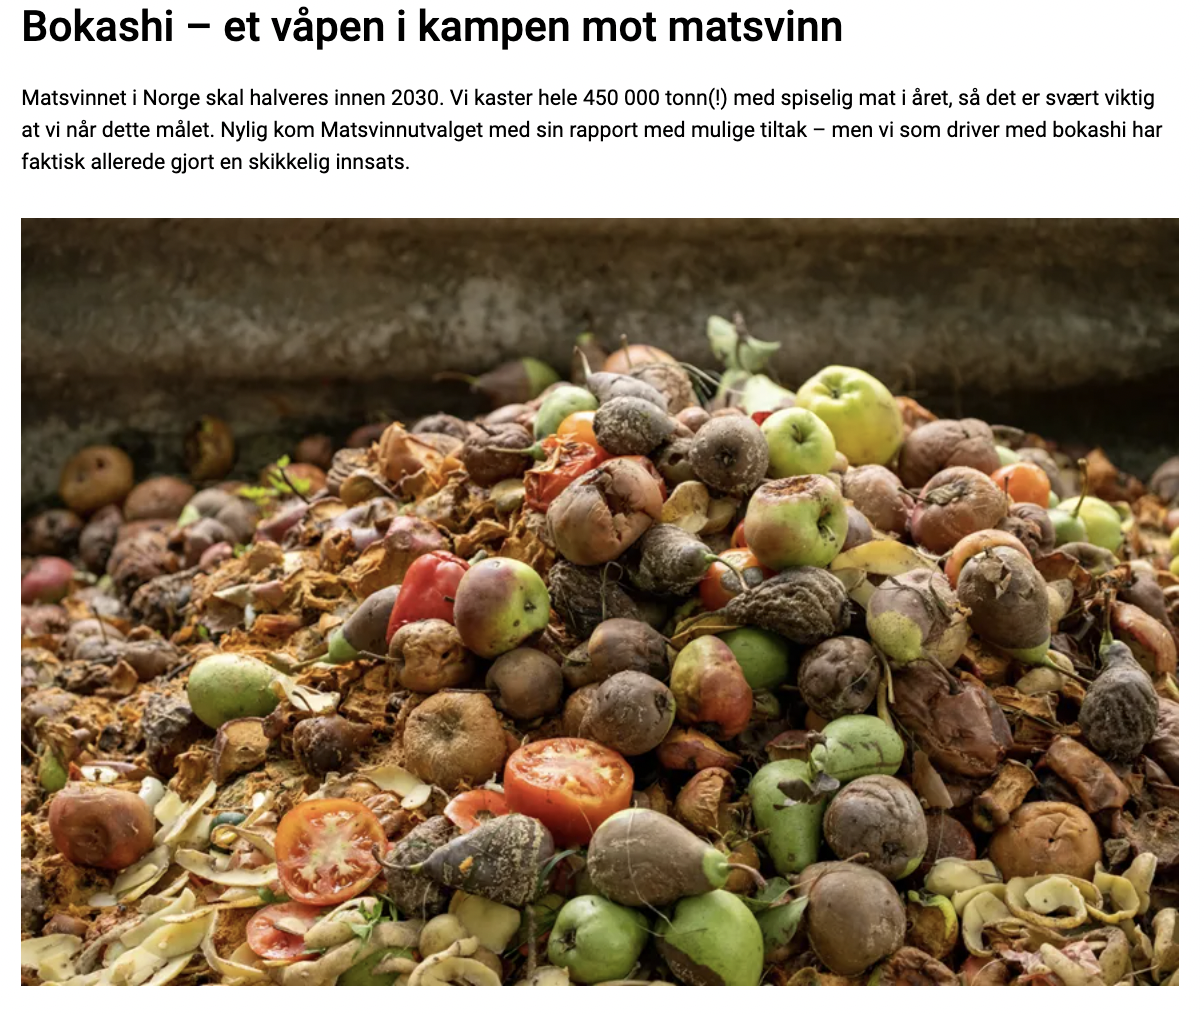 【ノルウェー】ボカシ – 食品廃棄物との戦いの武器 | Bokashi norge